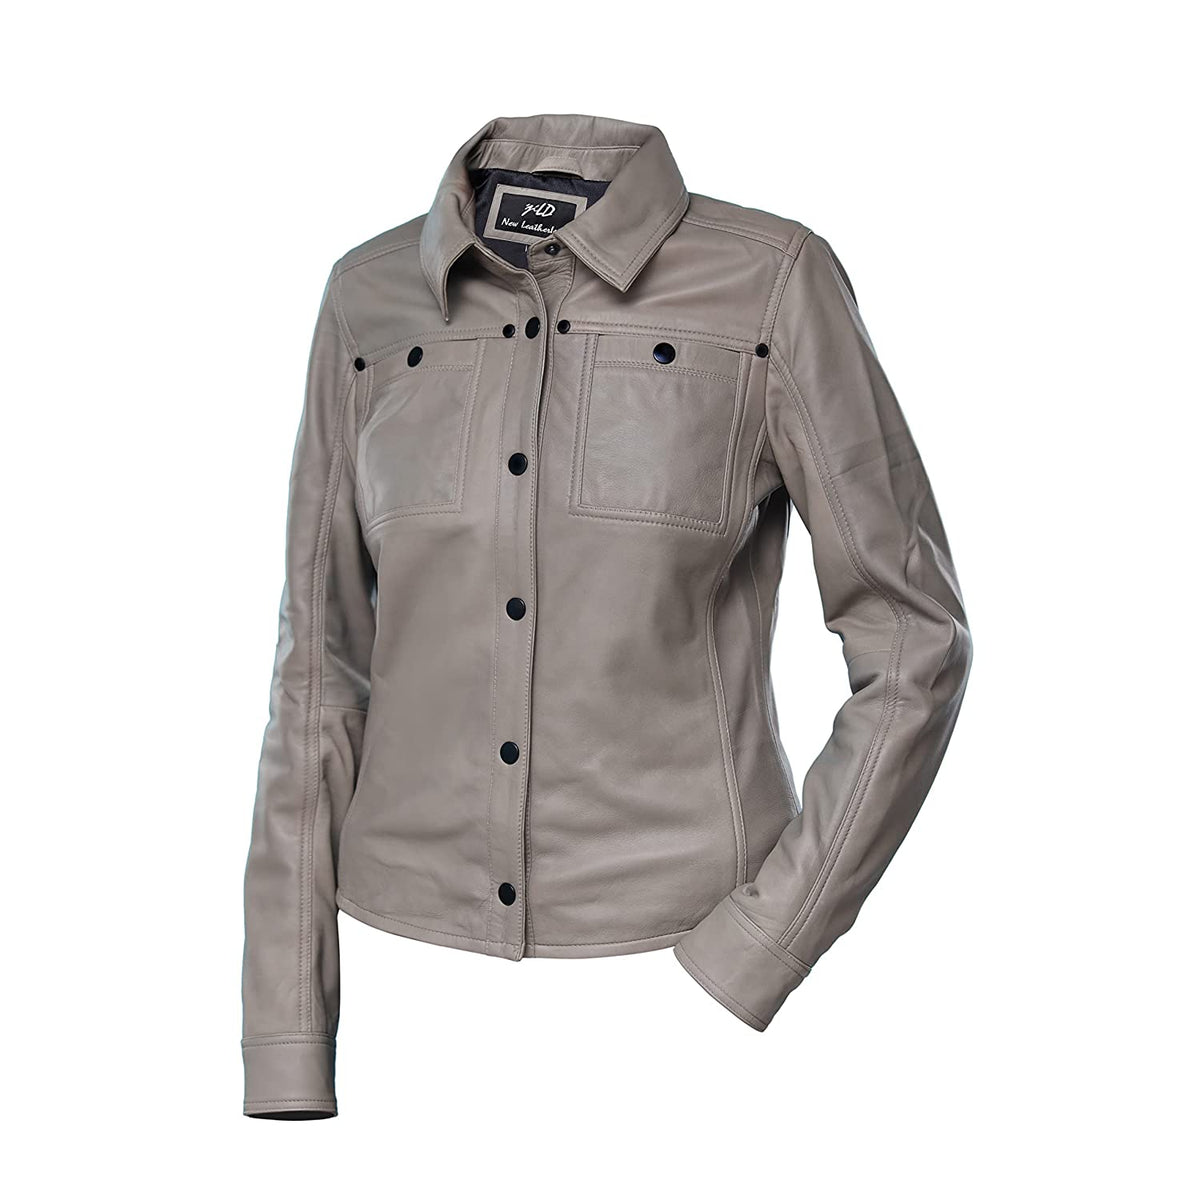 Womens Grey Shirt Style Leather Jacket